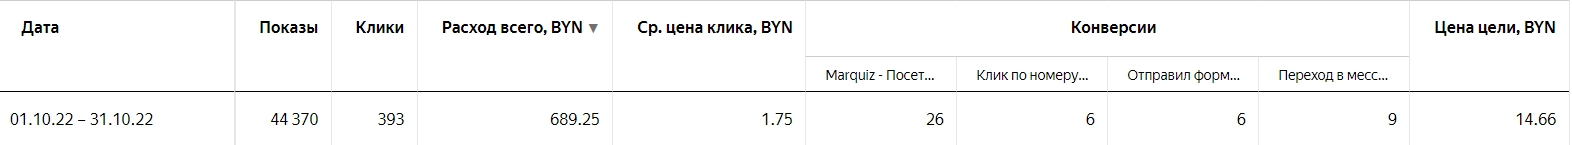 Статистика по конверсиям в Яндекс.Директе в период с 01.10.2022 по 31.10.2022